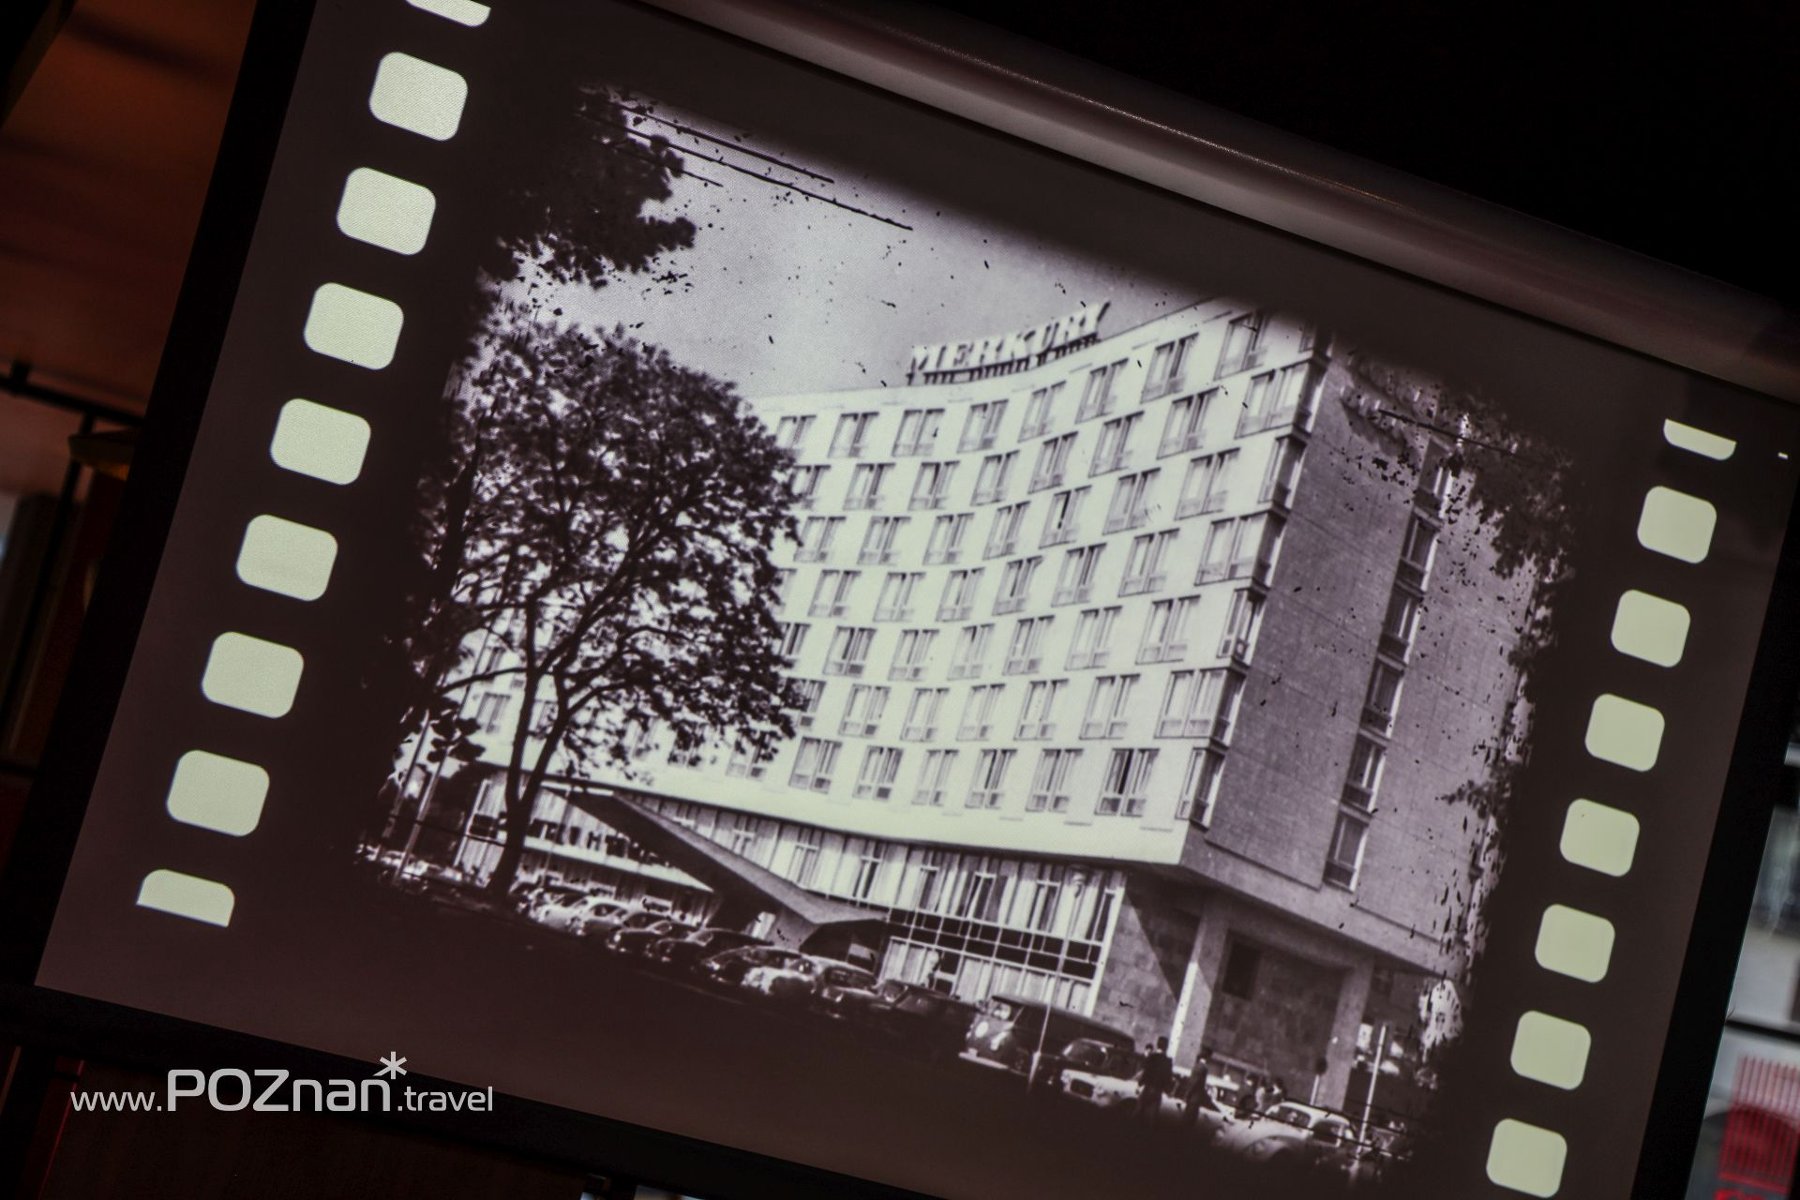 Stare zdjęcie Hotelu Mercure Poznań. Zdjęcie jest wyświetlone na rzutniku. W lewym dolnym rogu znak wodny www.POZnan.travel.pl - grafika artykułu